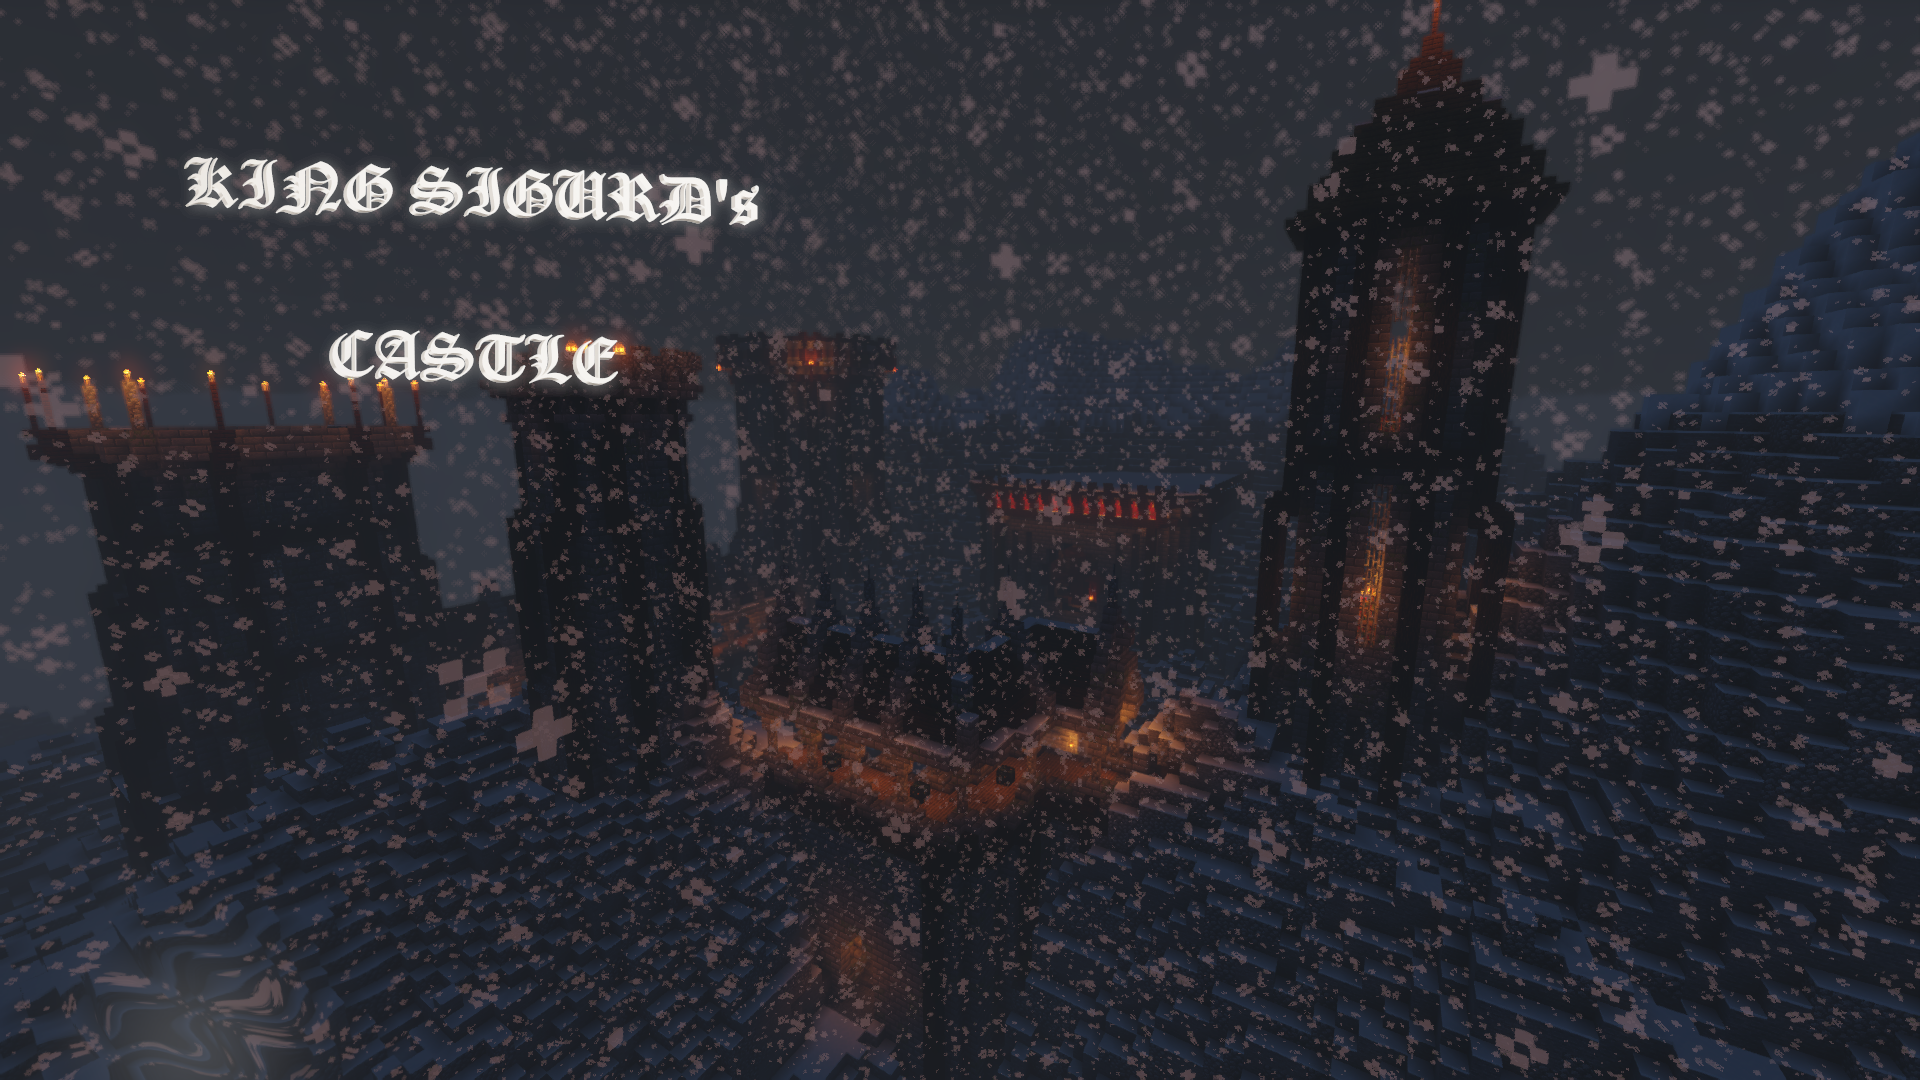 Télécharger King Sigurd's Castle pour Minecraft 1.14.4